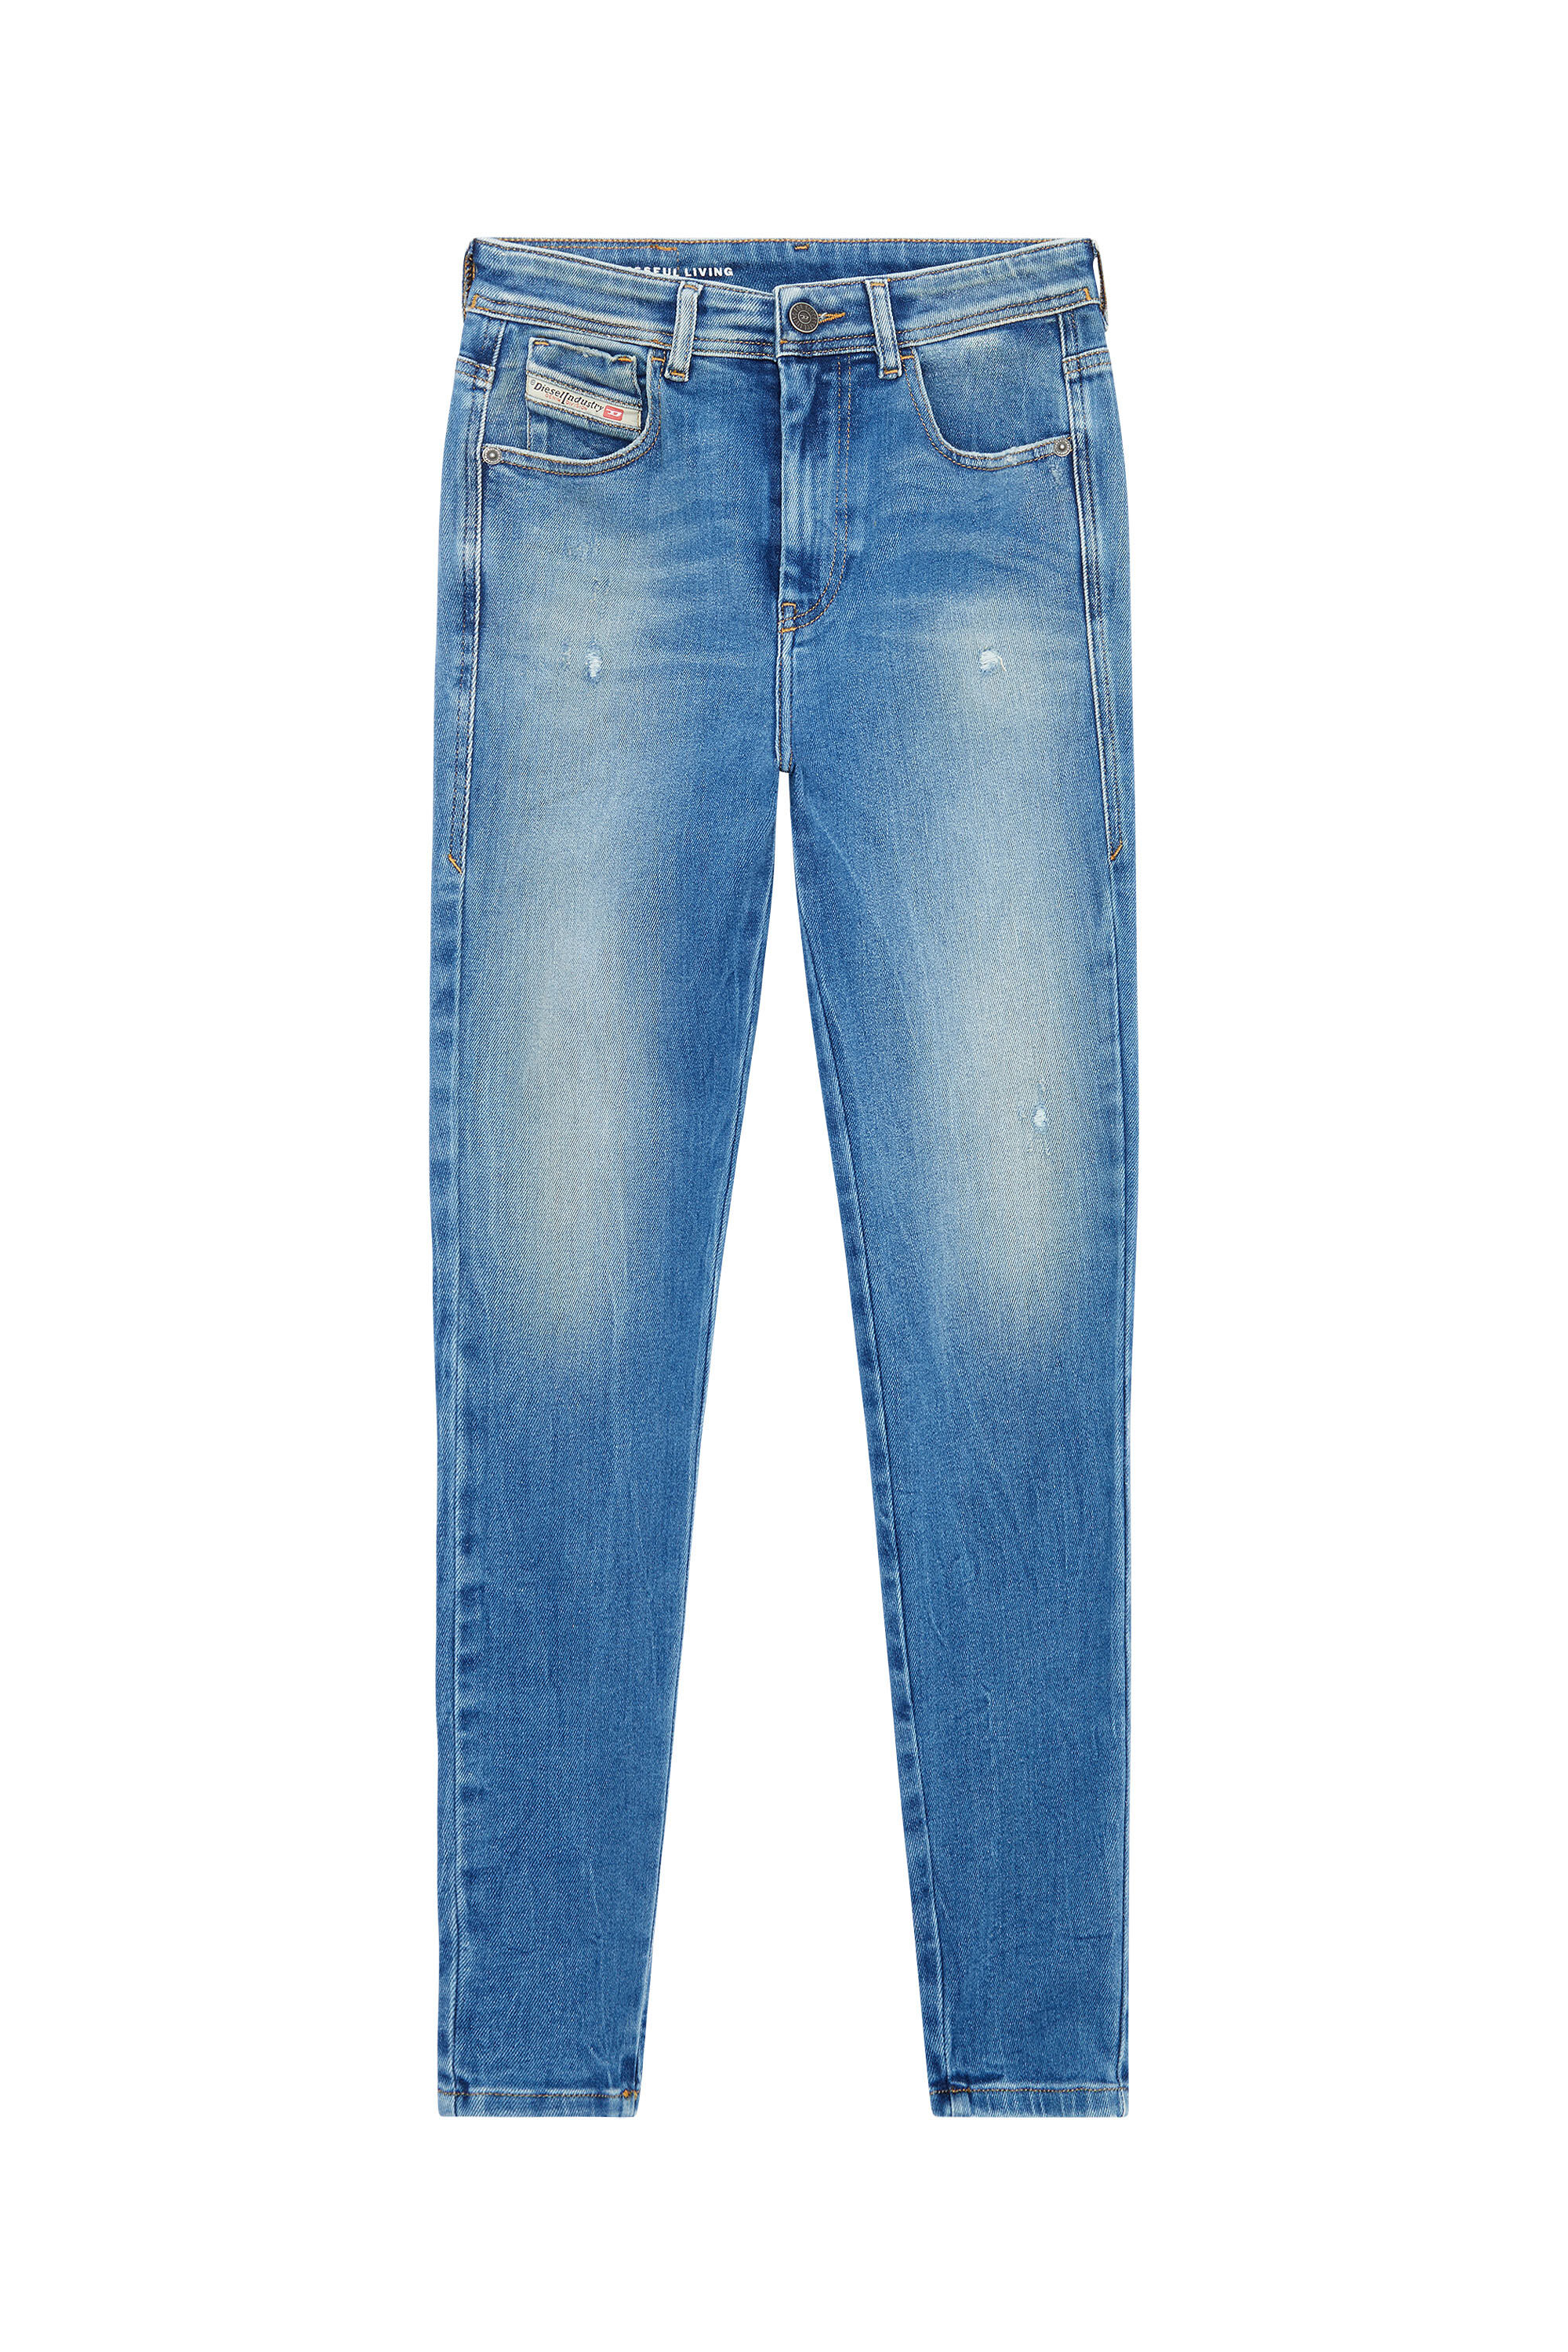 Diesel - Super skinny Jeans 1984 Slandy-High 09E91, Light Blue - Image 2